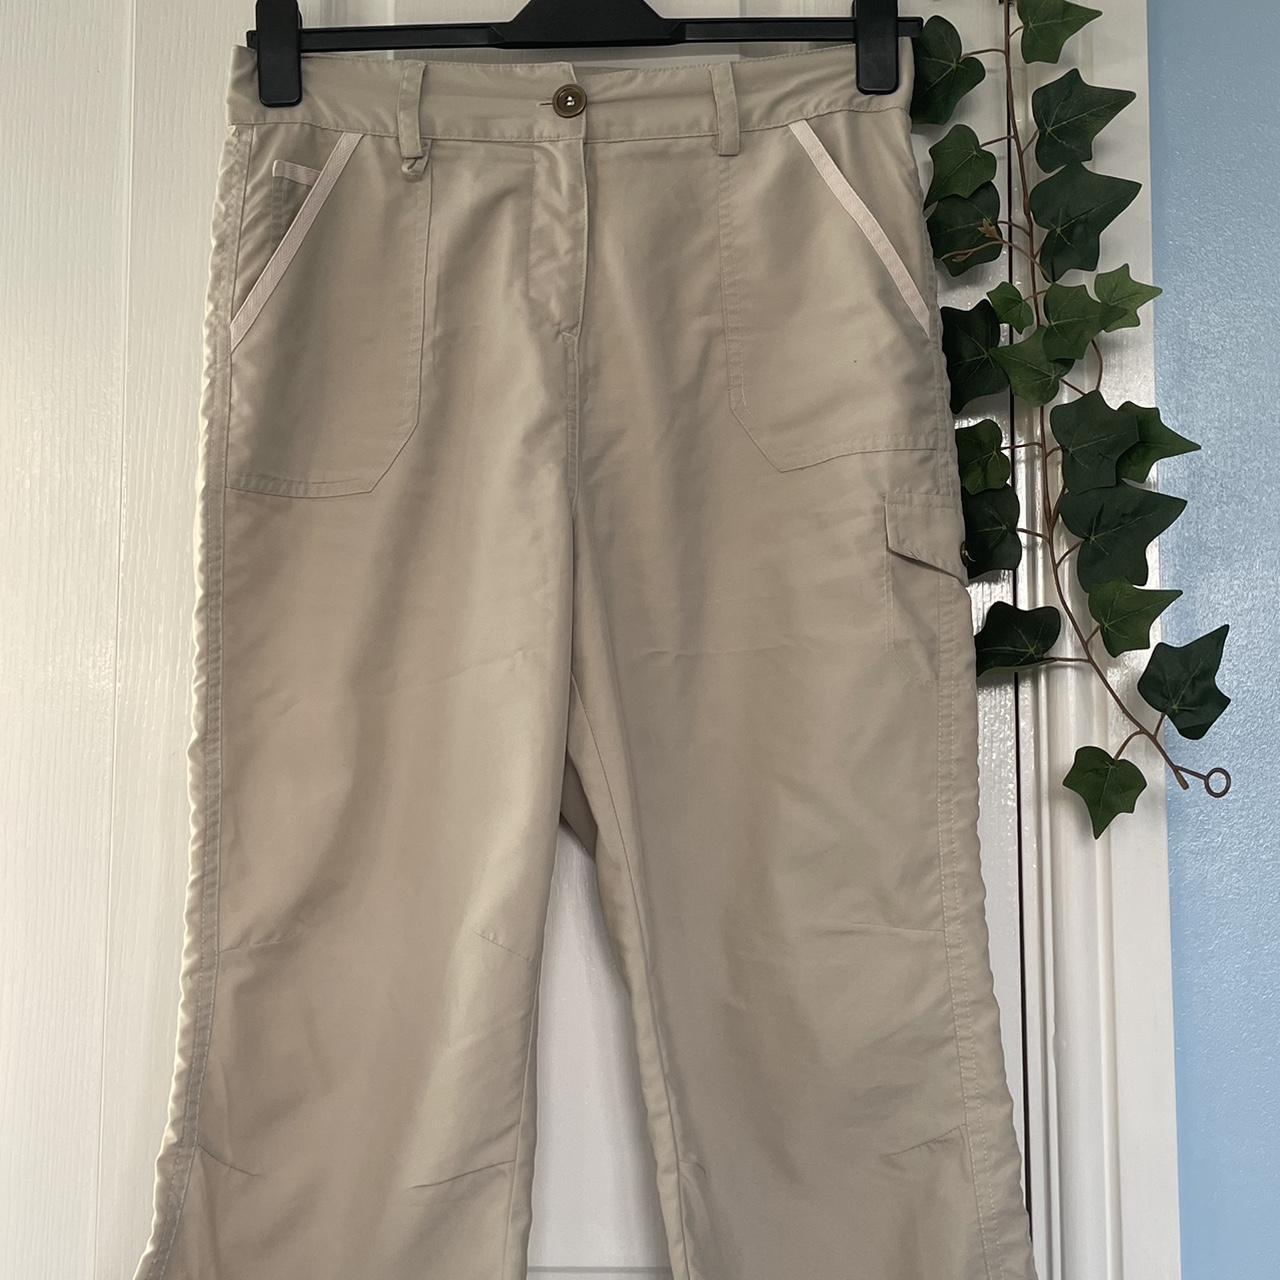 J.Jill Cargo Capri Beige Pants Size 14 Petite - Depop